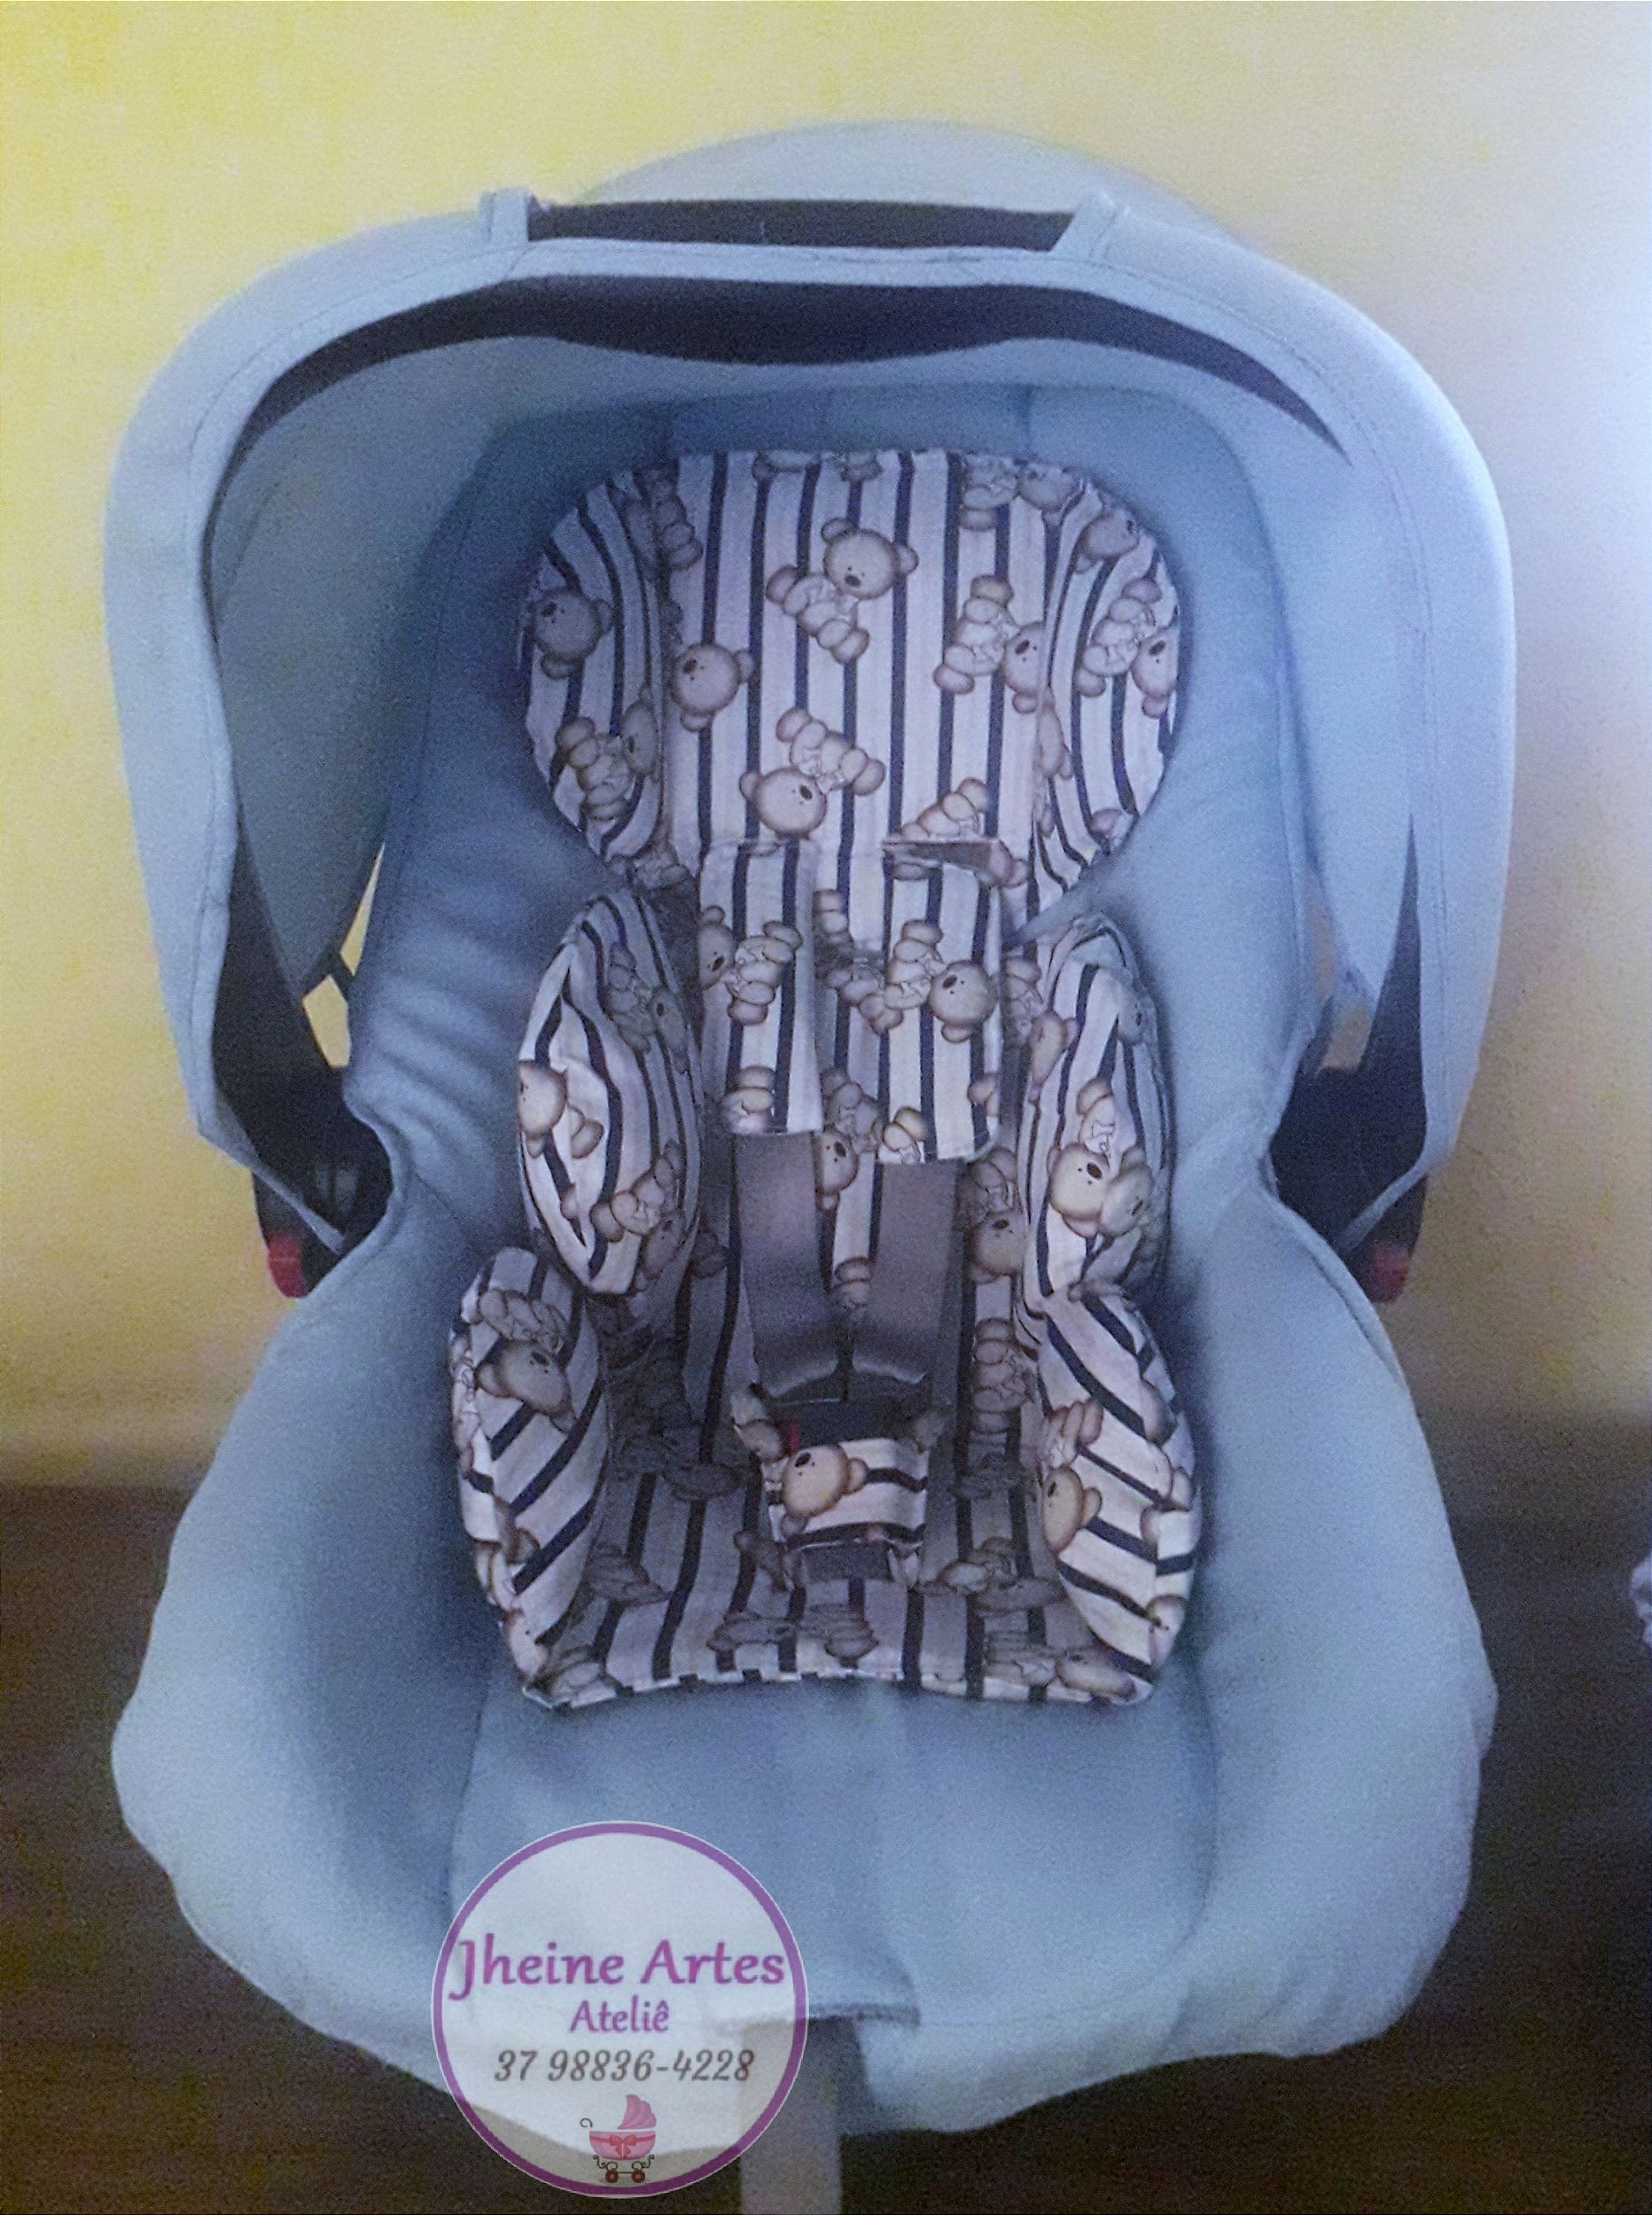 Kit capa para bebê conforto com almofadas redutoras - Jheine Artes Ateliê  sua lista de enxoval, quarto do bebê com segurança e amor